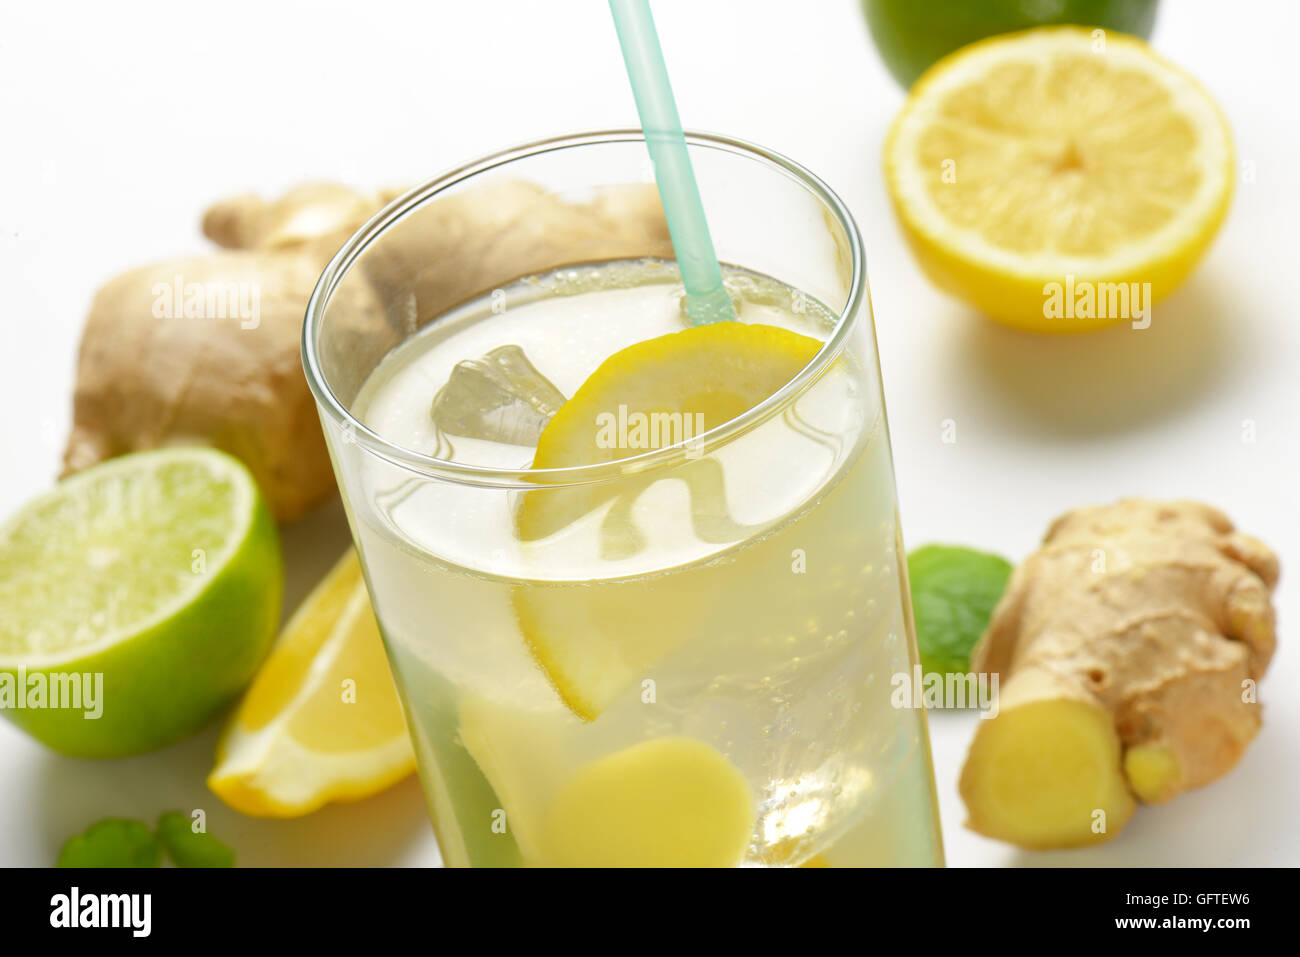 Dettaglio del bicchiere di ghiaccio allo zenzero tè con limone e zenzero fresco Foto Stock